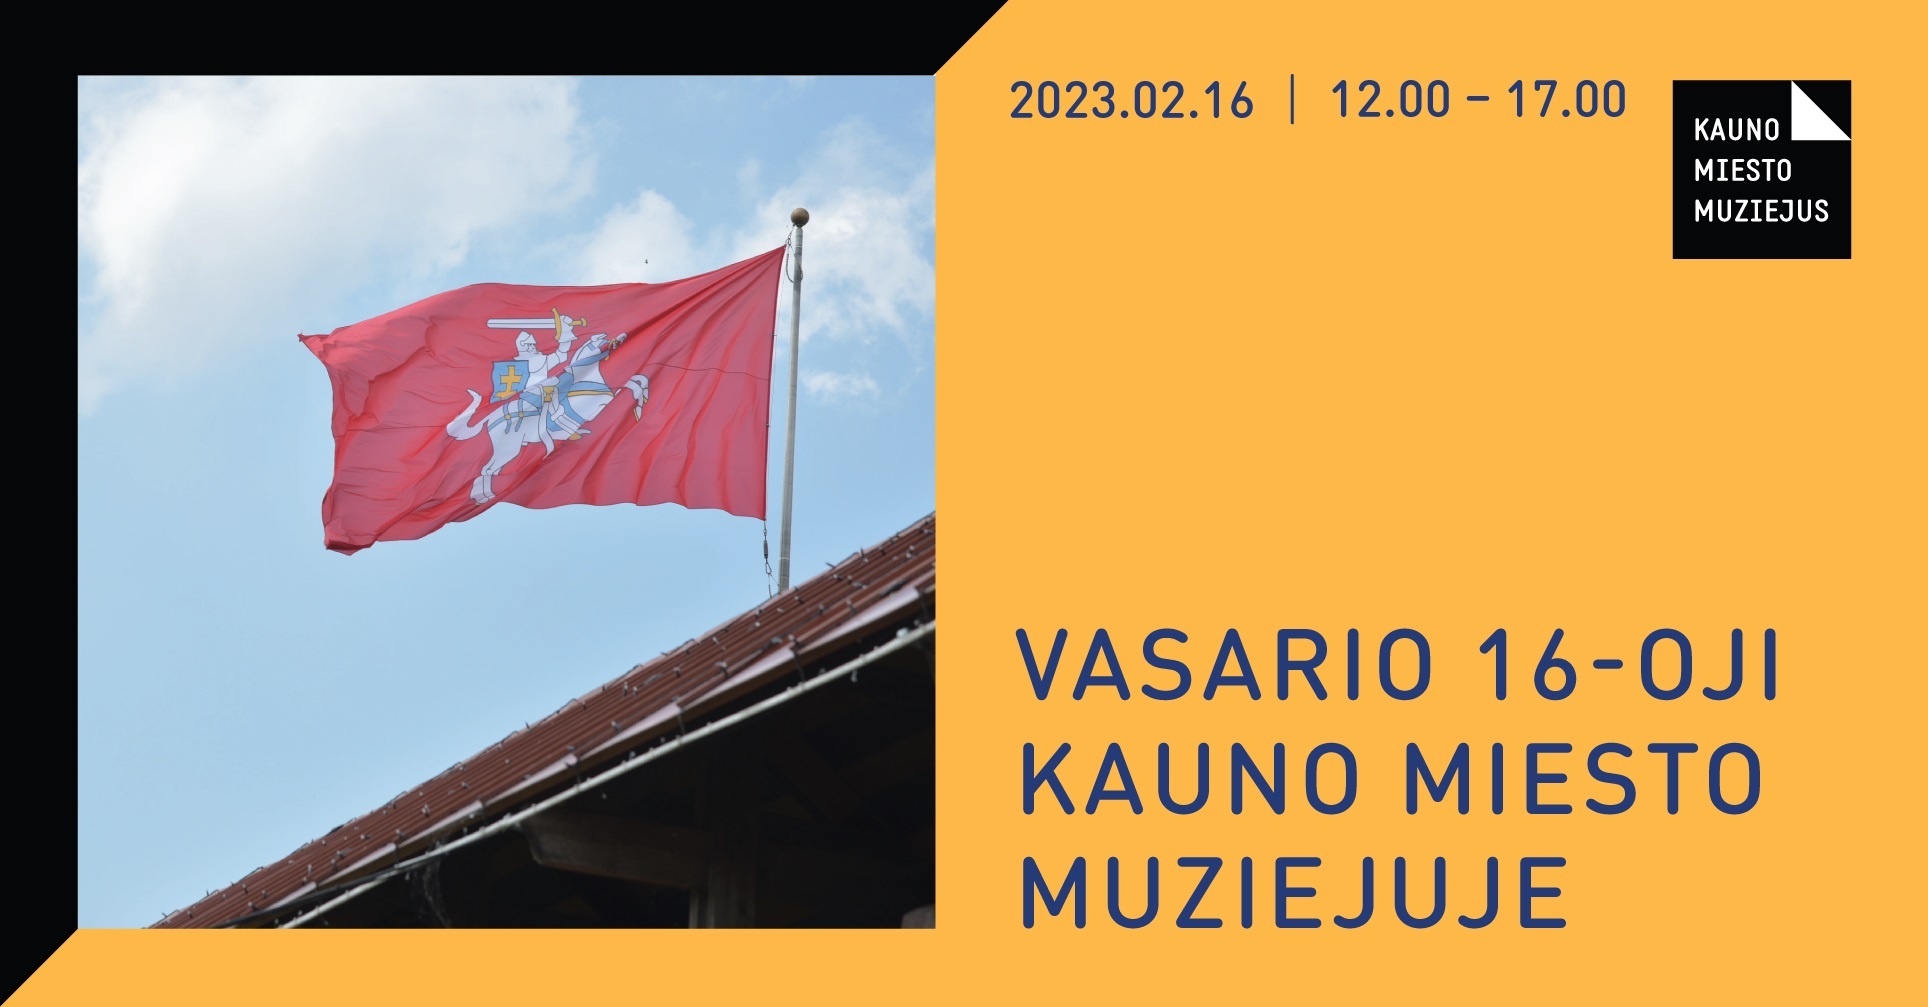 Vasario 16-oji Kauno miesto muziejuje